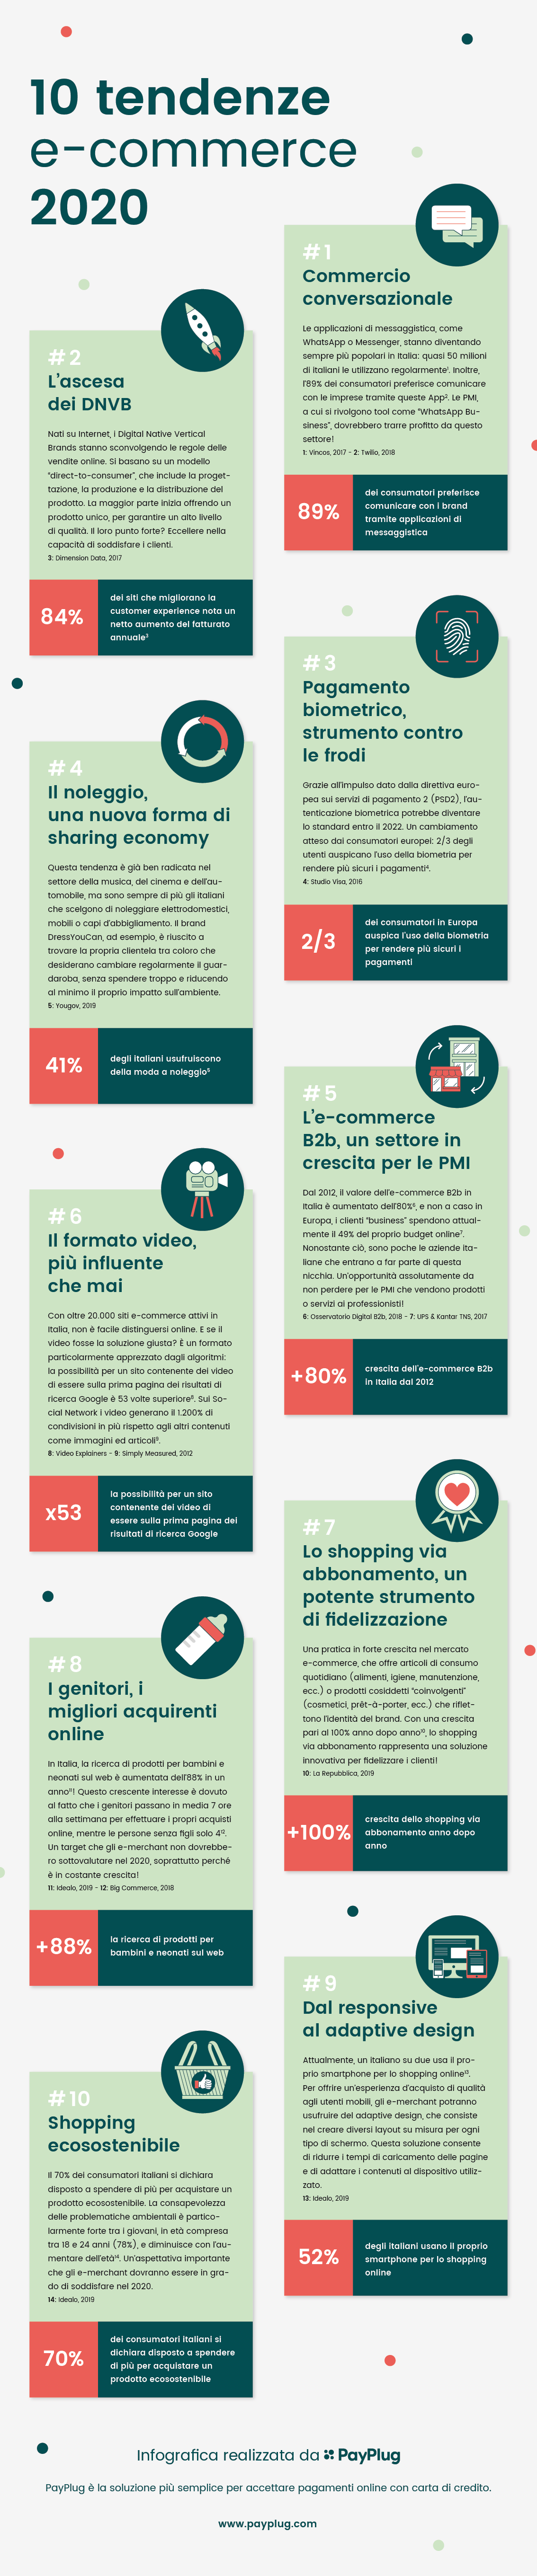 Infografica - 10 tendenze e-commerce 2020 